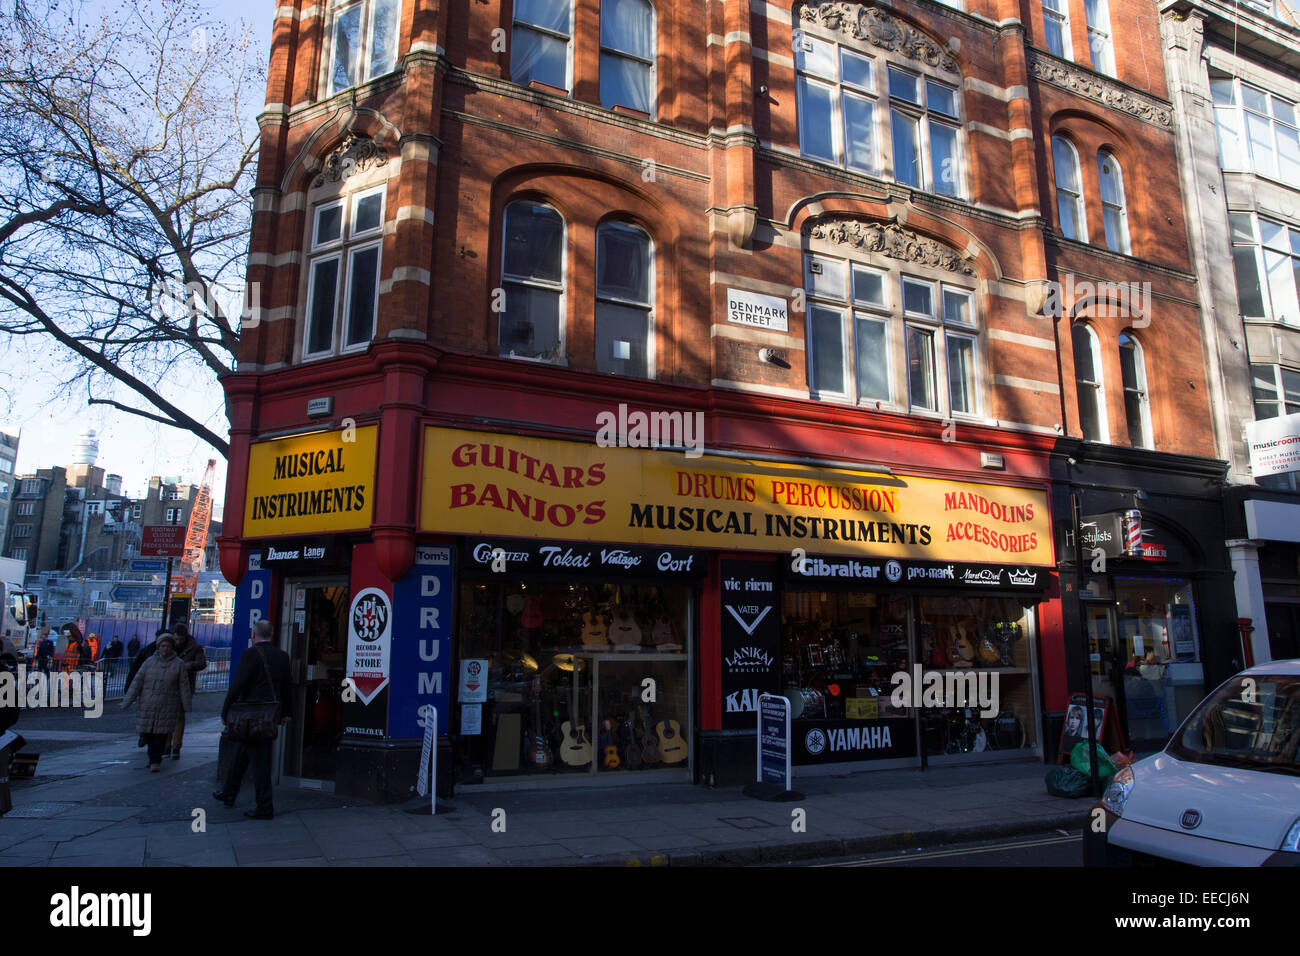 Musikinstrumente Shop auf Londons historische Denmark Street. Legen Sie für den Abriss Crossrail-Erweiterung weichen. Stockfoto